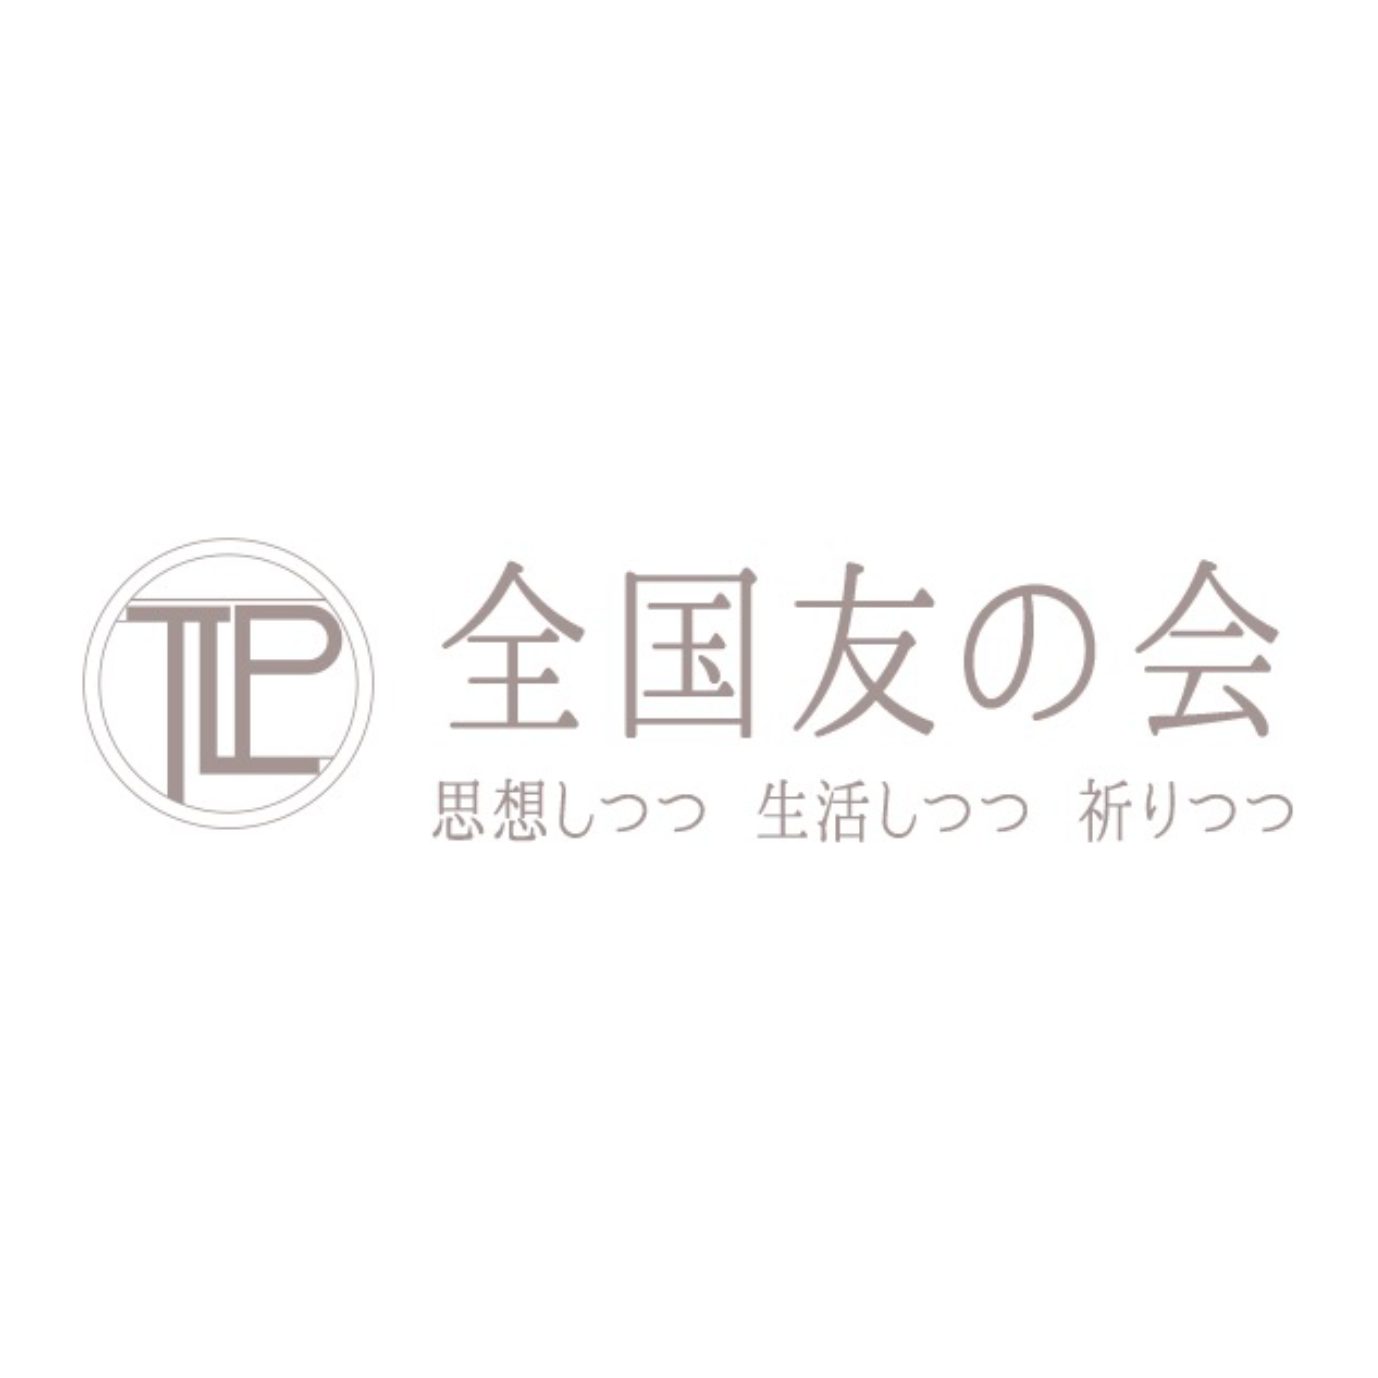 logo_tomonokai